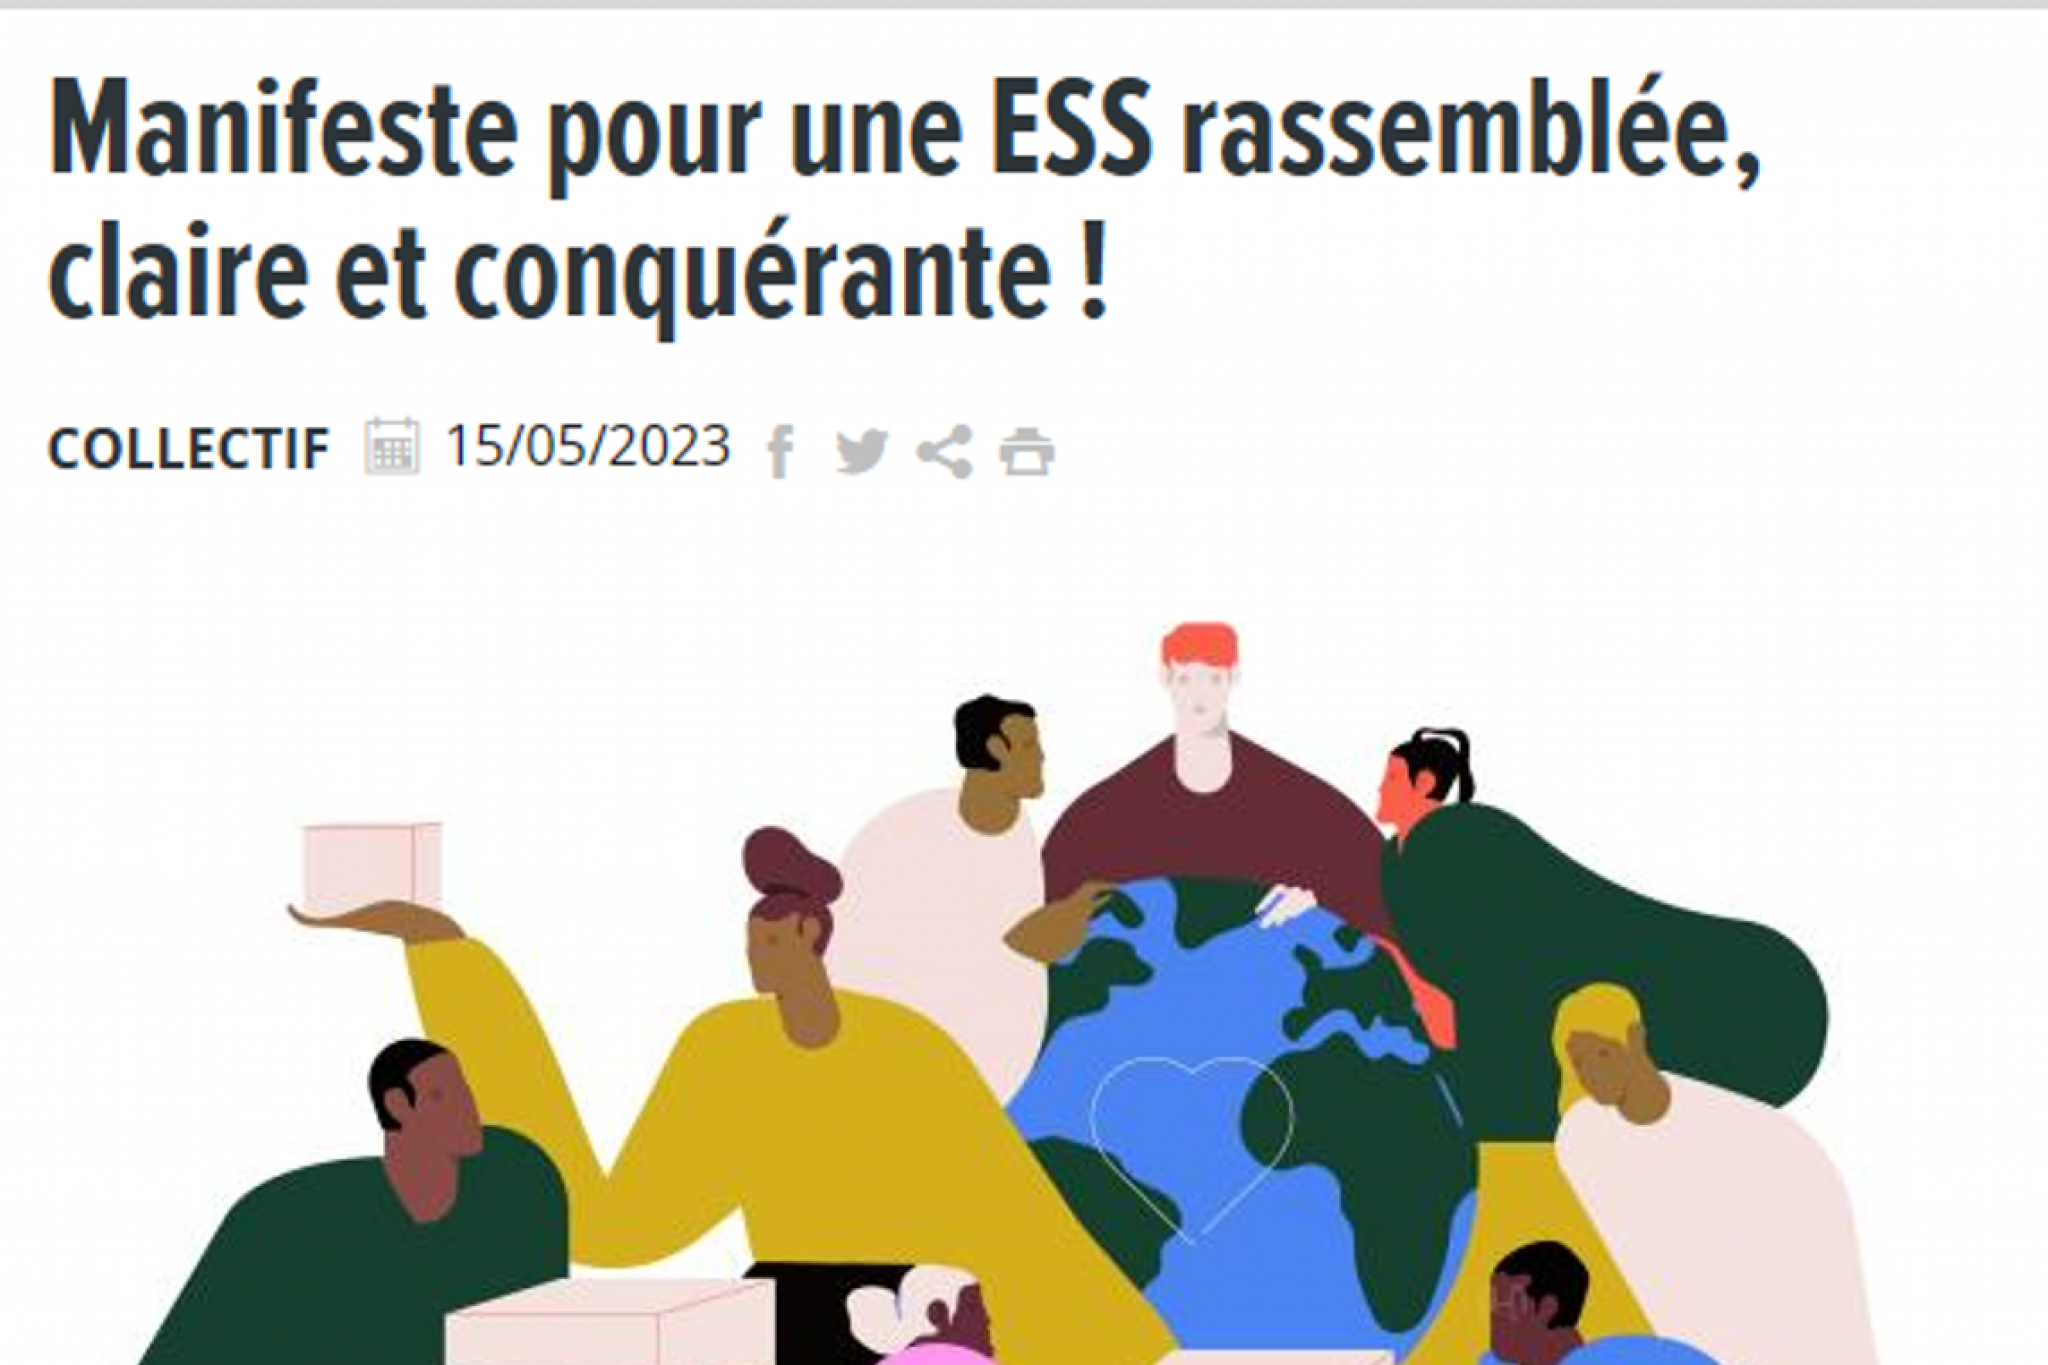 "Pour une ESS rassemblée, claire et conquérante", un manifeste publié dans Alternatives Economiques